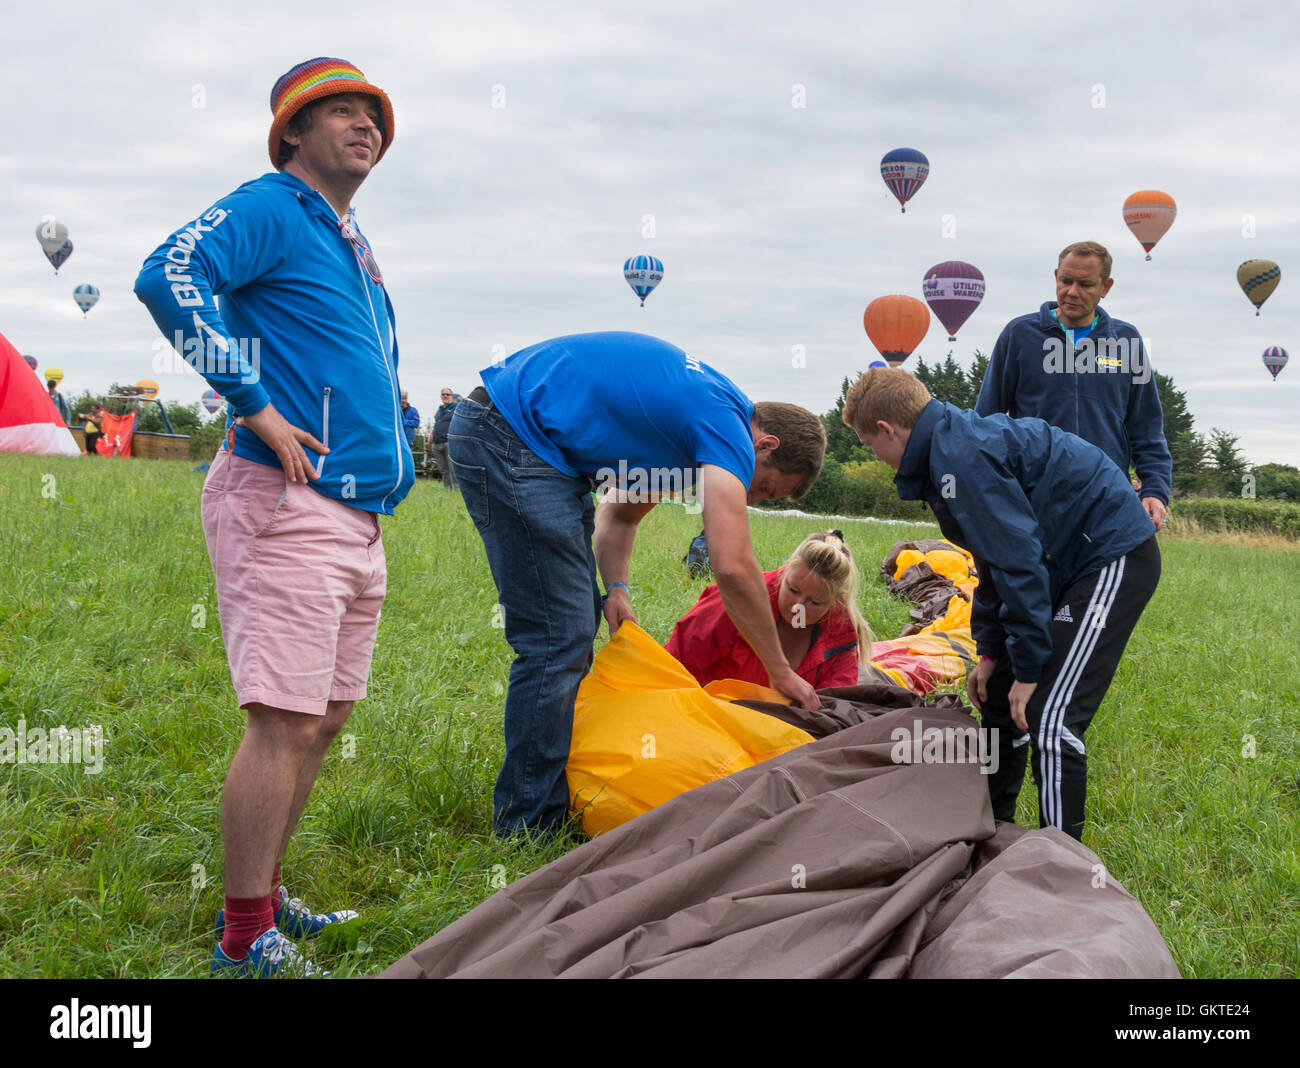 El piloto y su tripulación pack su globo en un campo en la 38ª anual de Bristol International Balloon Fiesta Foto de stock